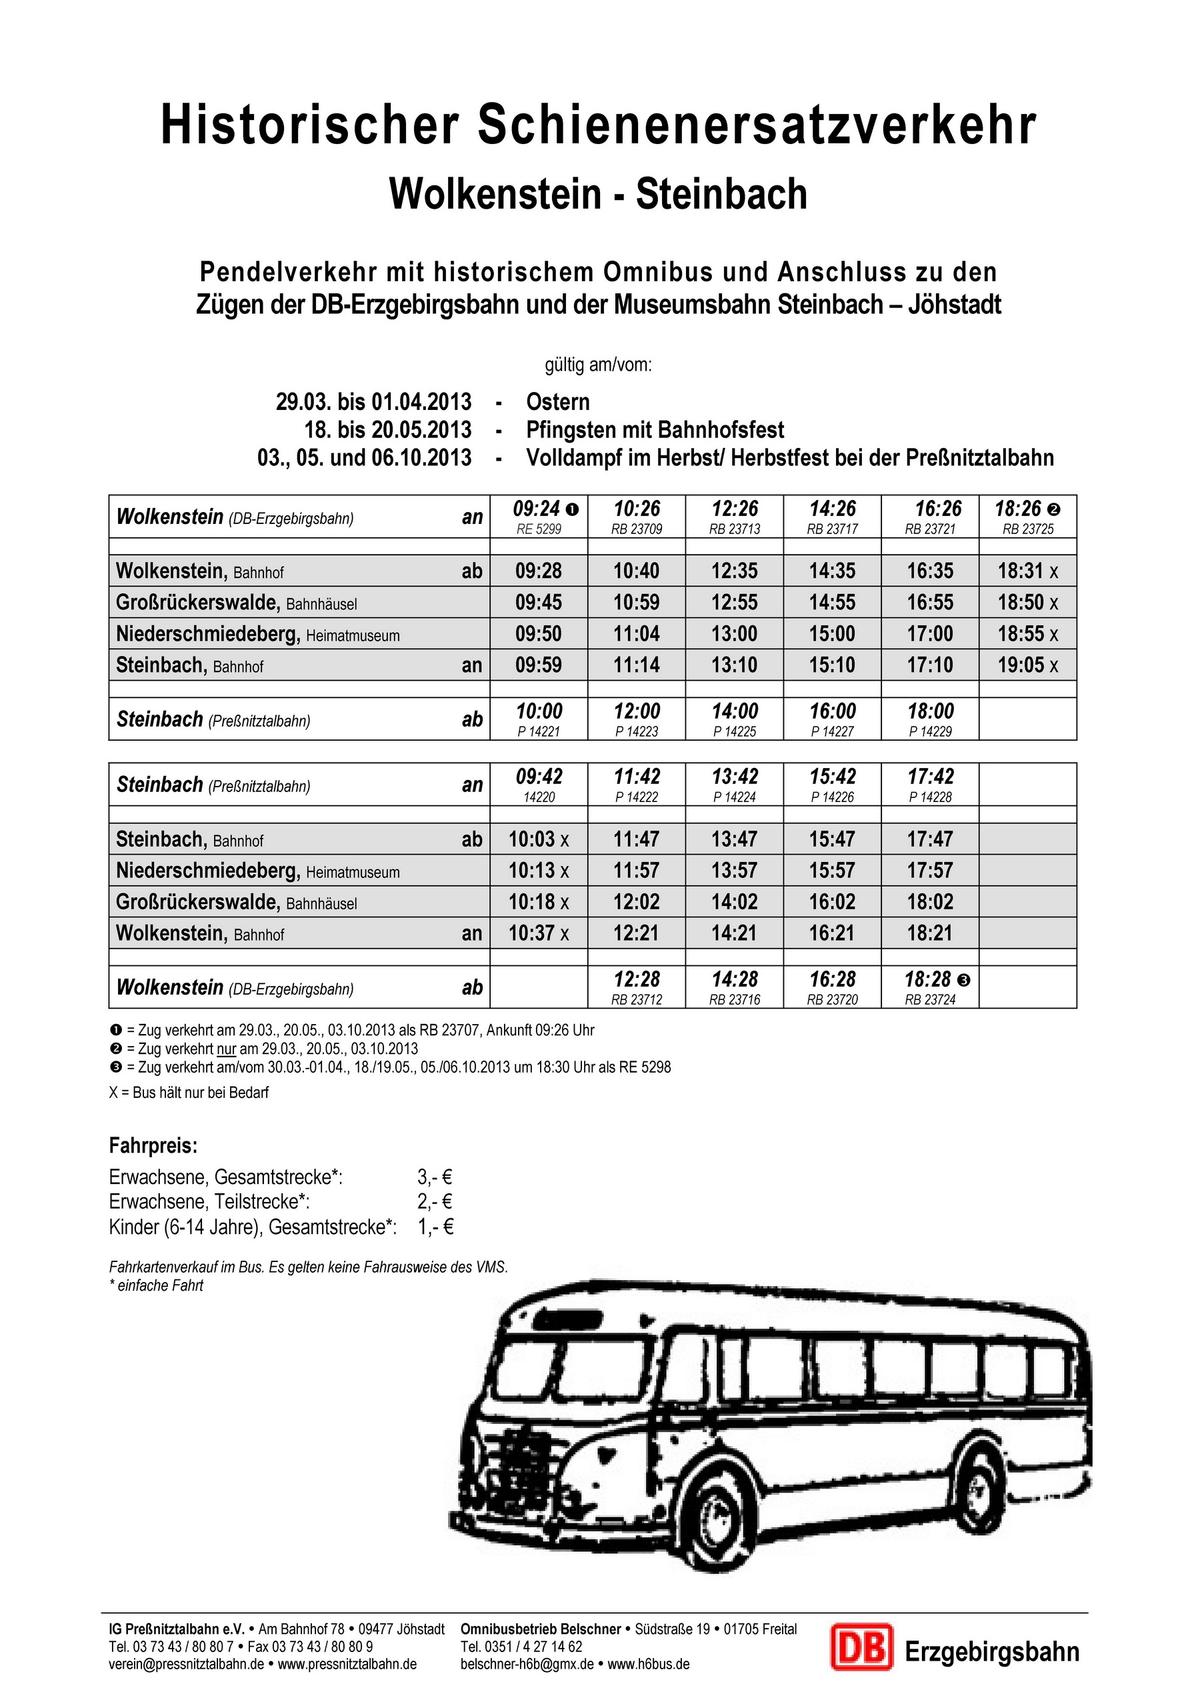 Fahrplan der Busse zwischen Wolkenstein und Steinbach